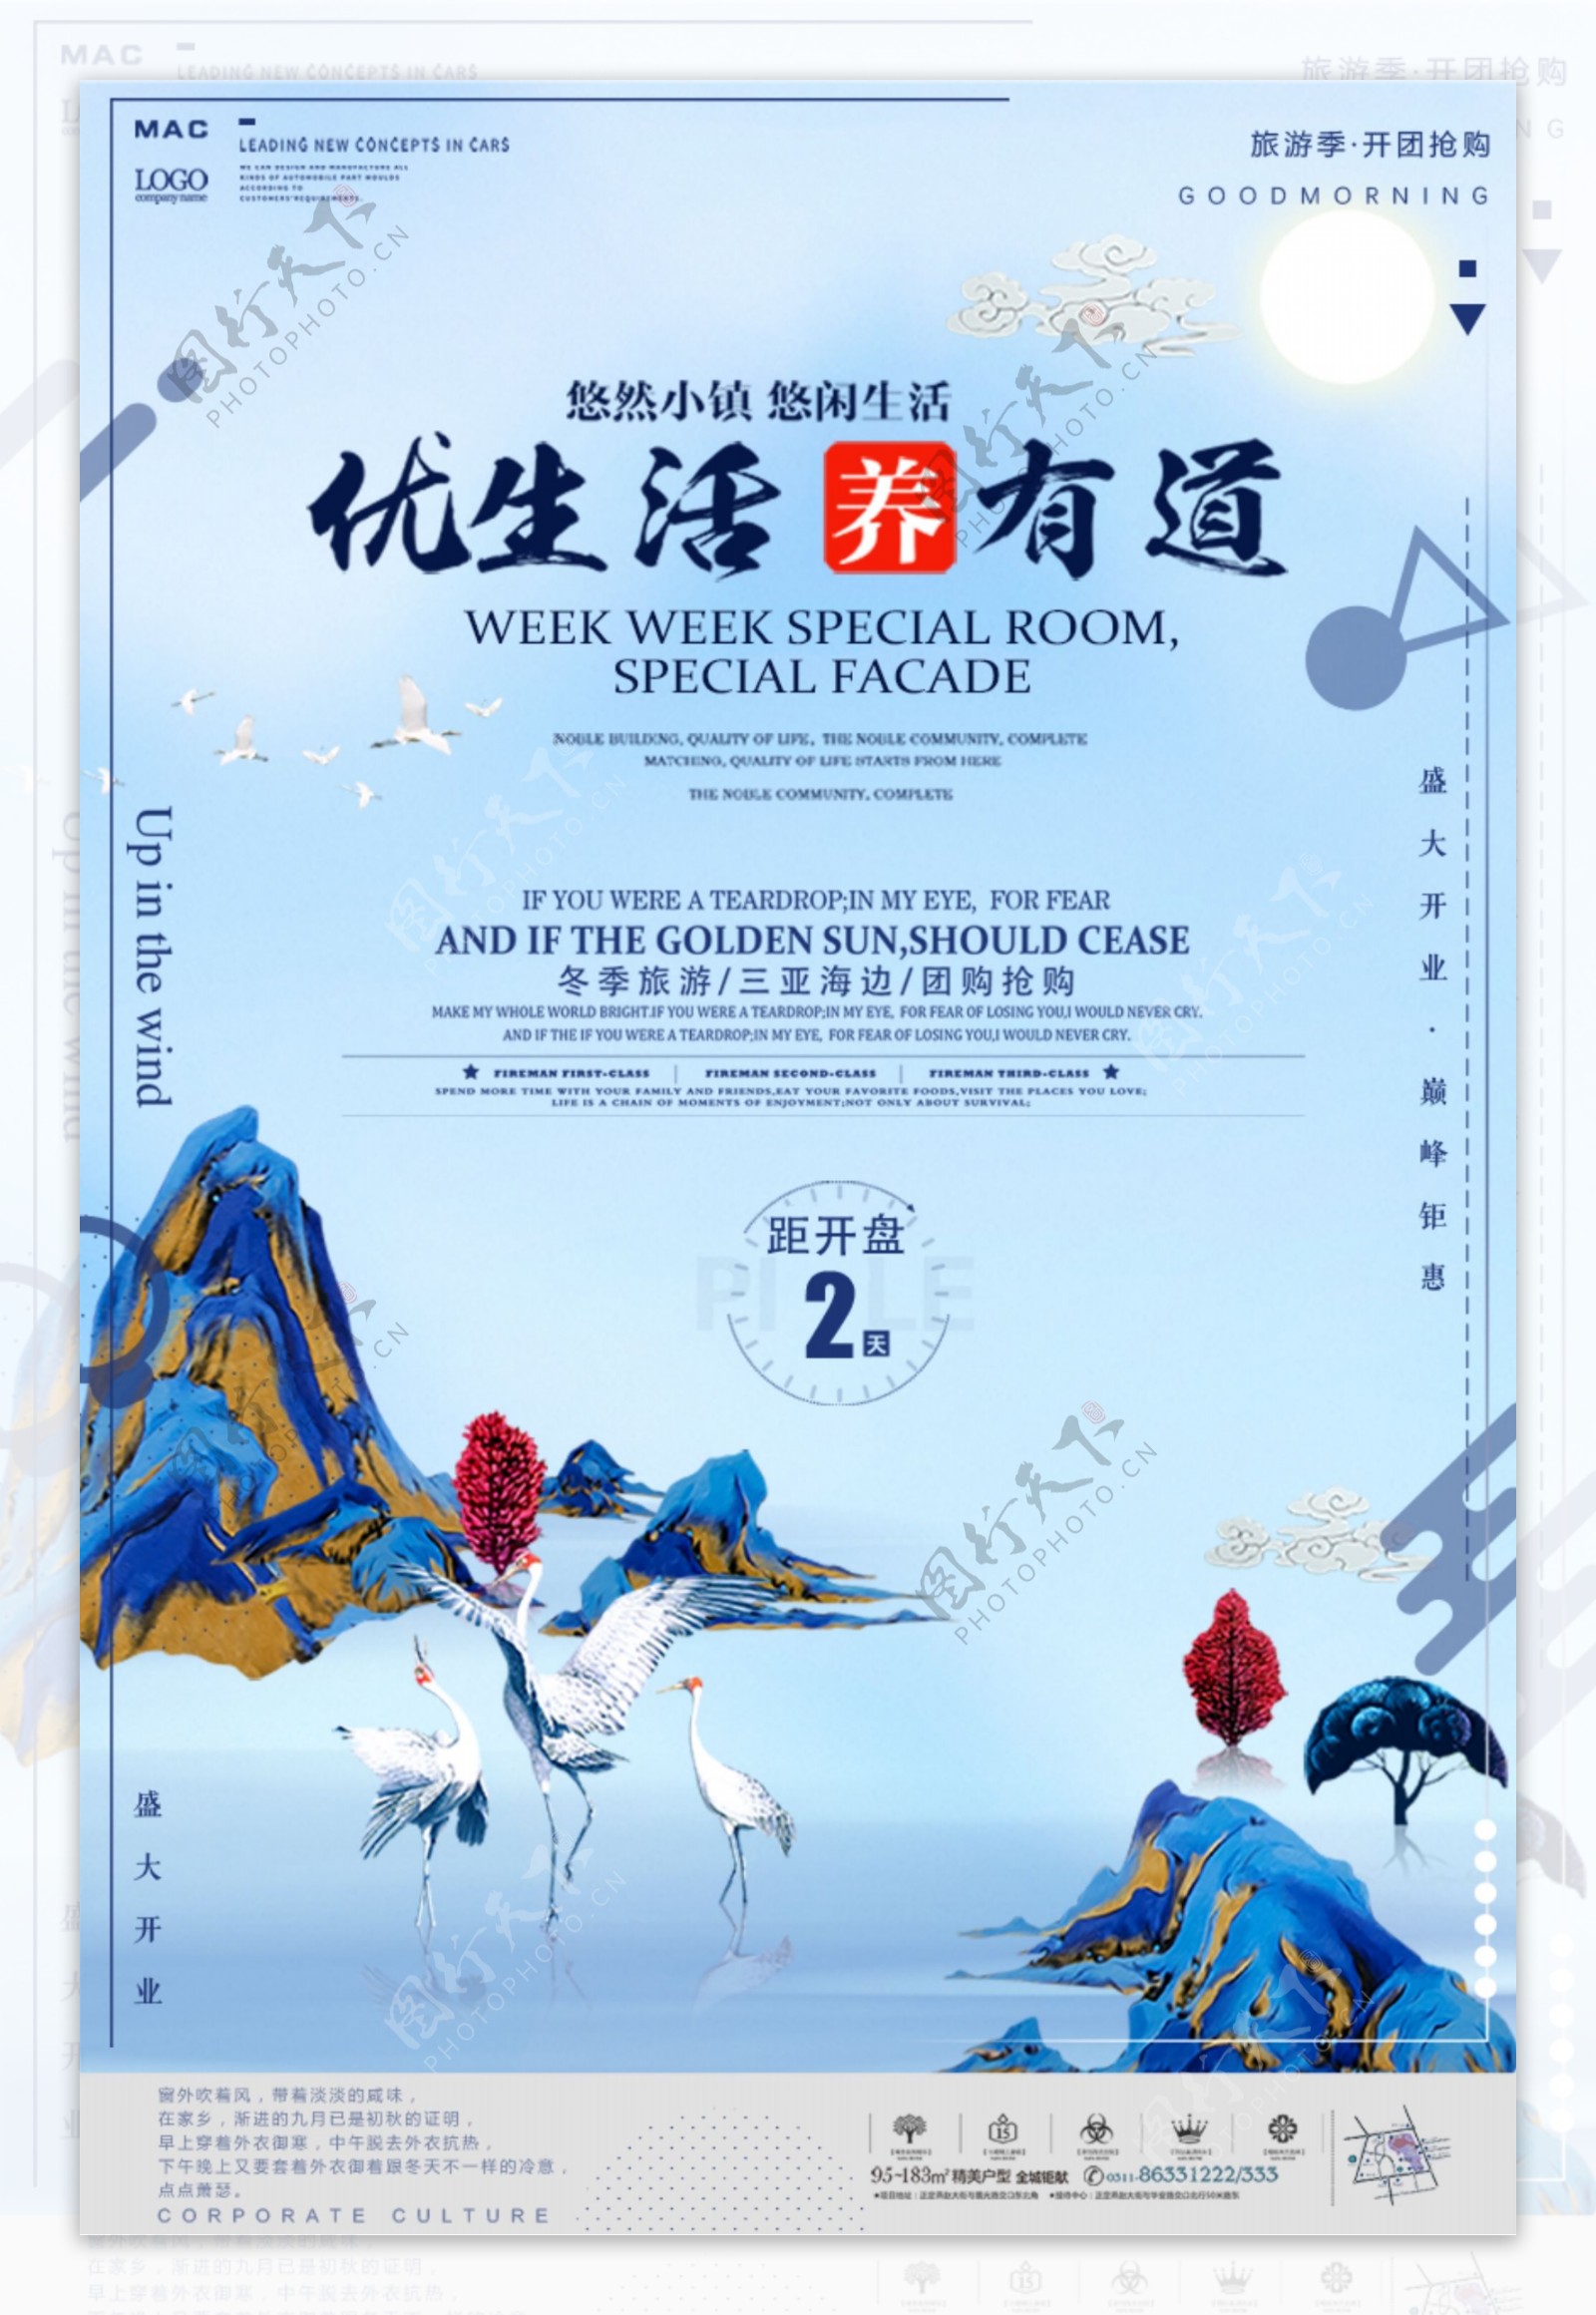 中国风插画剪纸地产商业海报